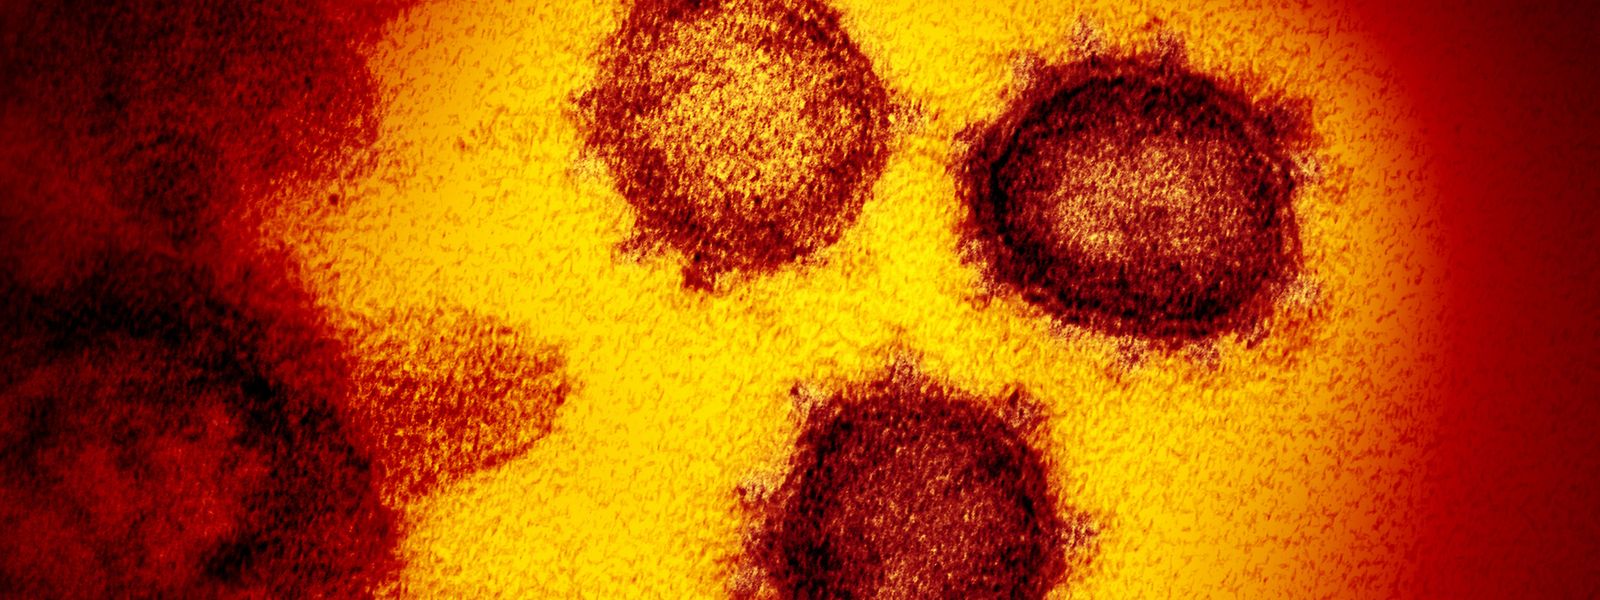 Die vom National Institute of Allergy and Infectious Diseases zur Verfügung gestellte Elektronenmikroskopaufnahme zeigt das Coronavirus SARS-CoV-2, das von einem Patienten in den USA isoliert wurde und aus der Oberfläche von im Labor kultivierten Zellen austritt.